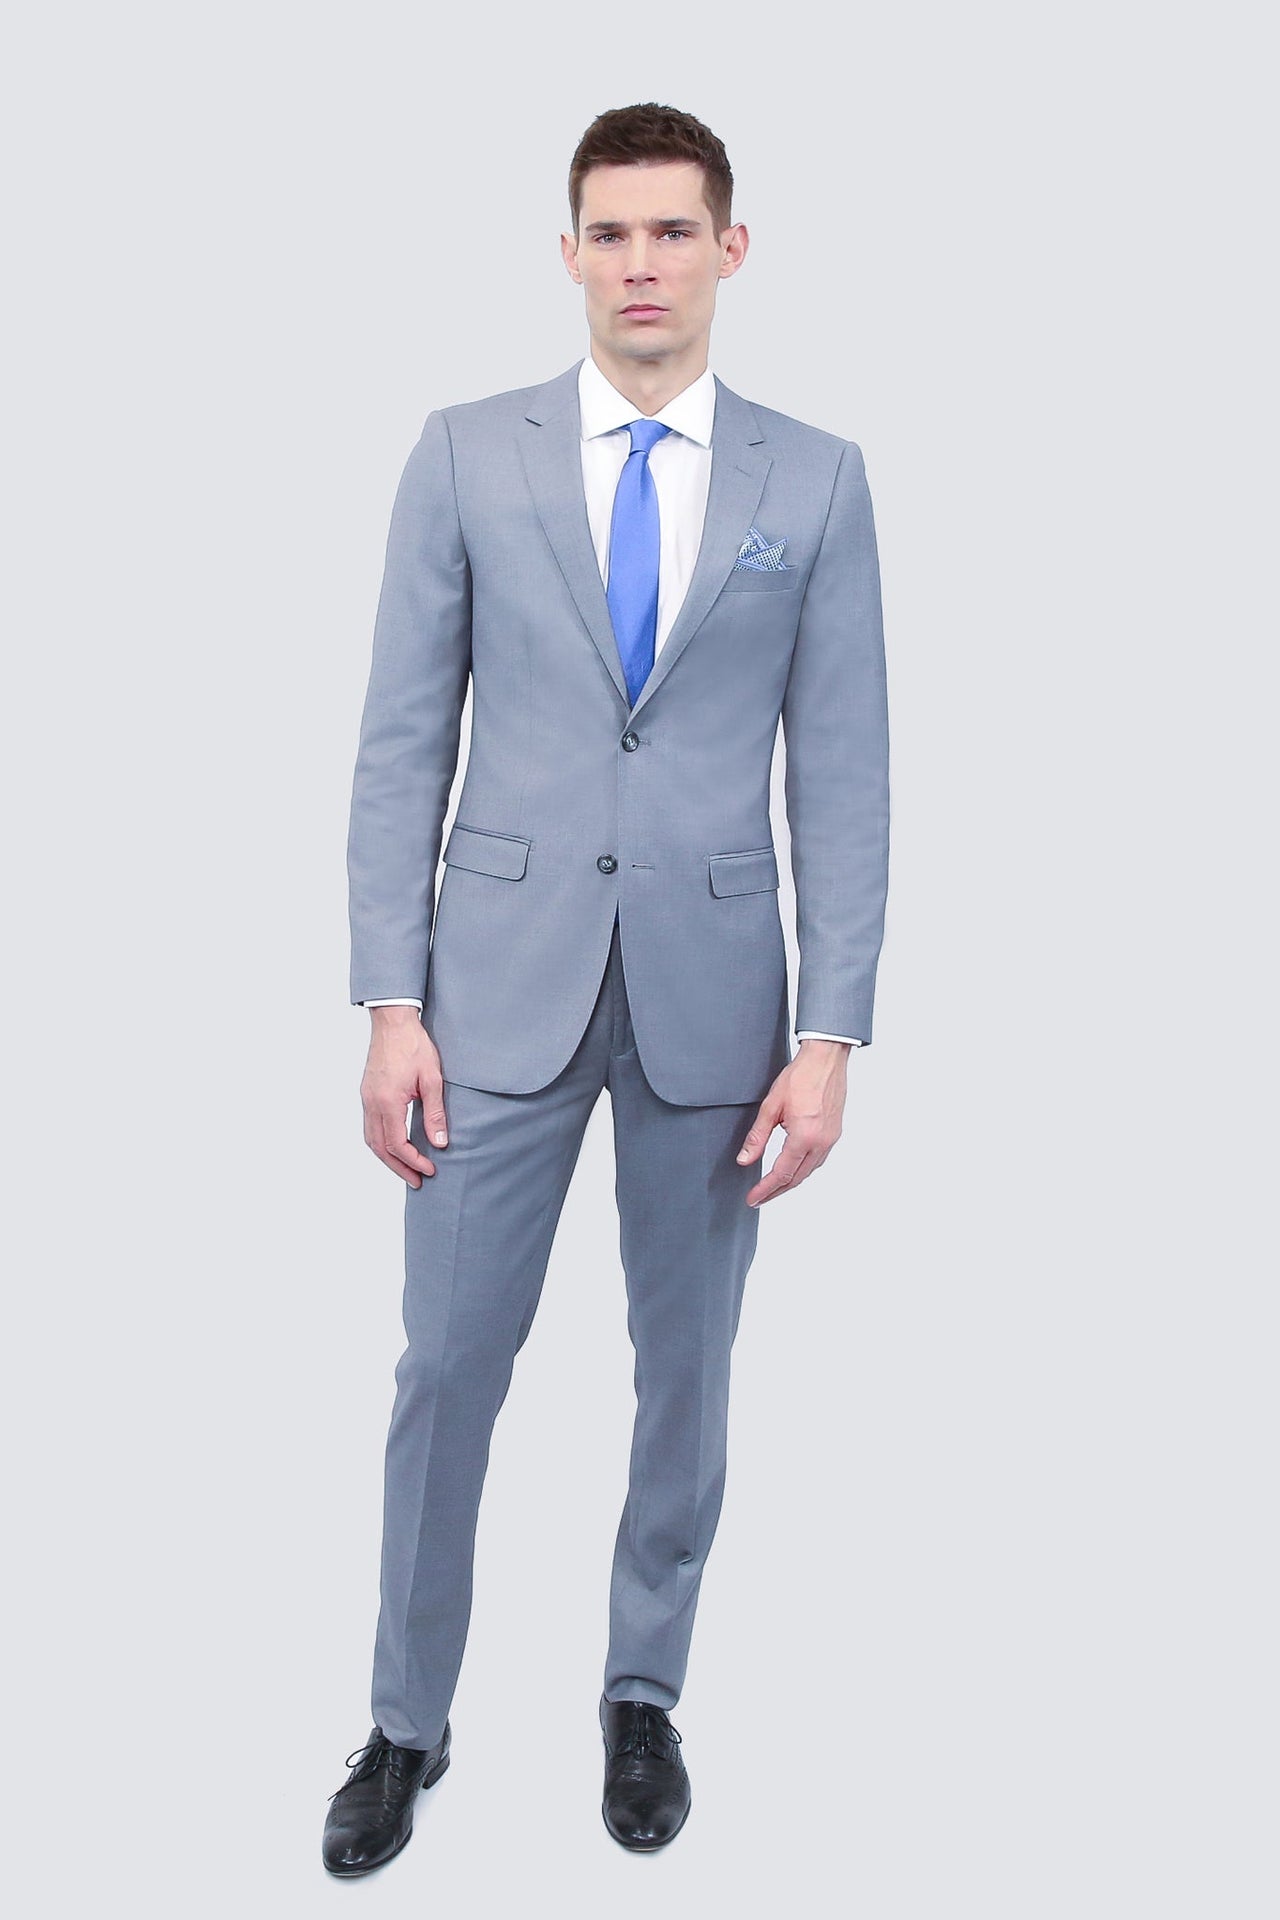 Tailor's Stretch Blend Suit | Shark Grey Modern or Slim Fit - Tomasso Black